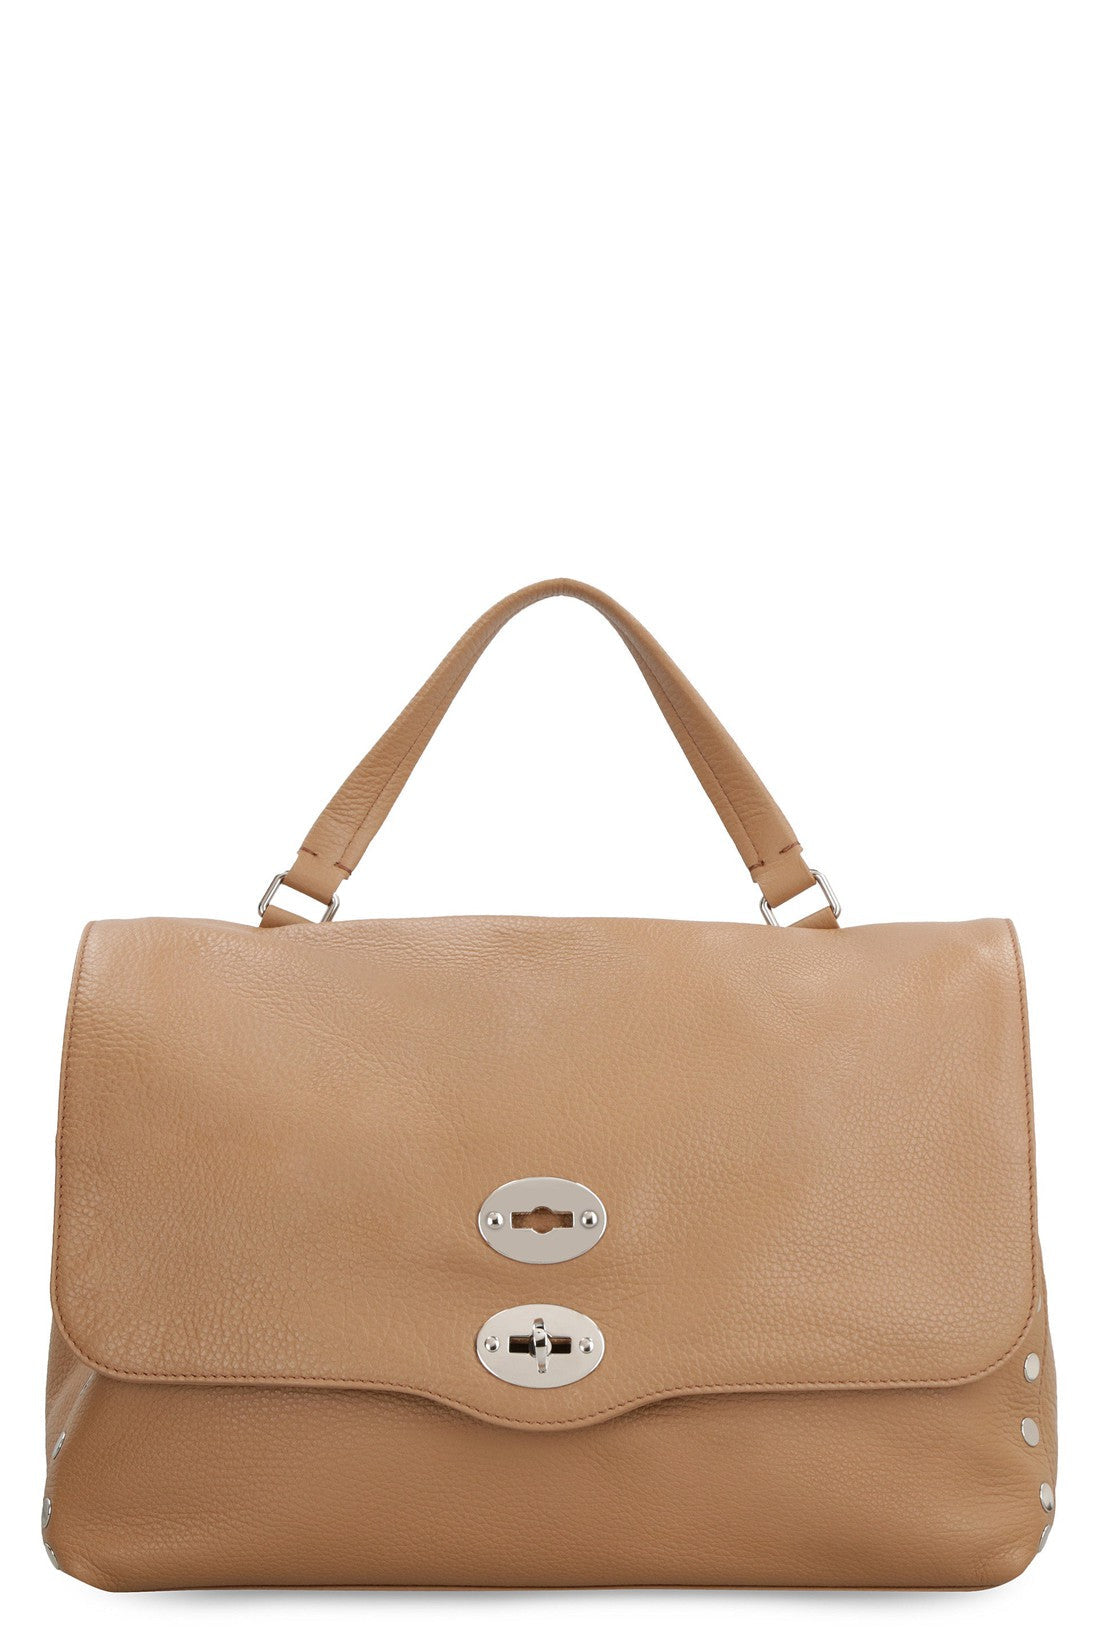 Zanellato-OUTLET-SALE-Postina M leather bag-ARCHIVIST